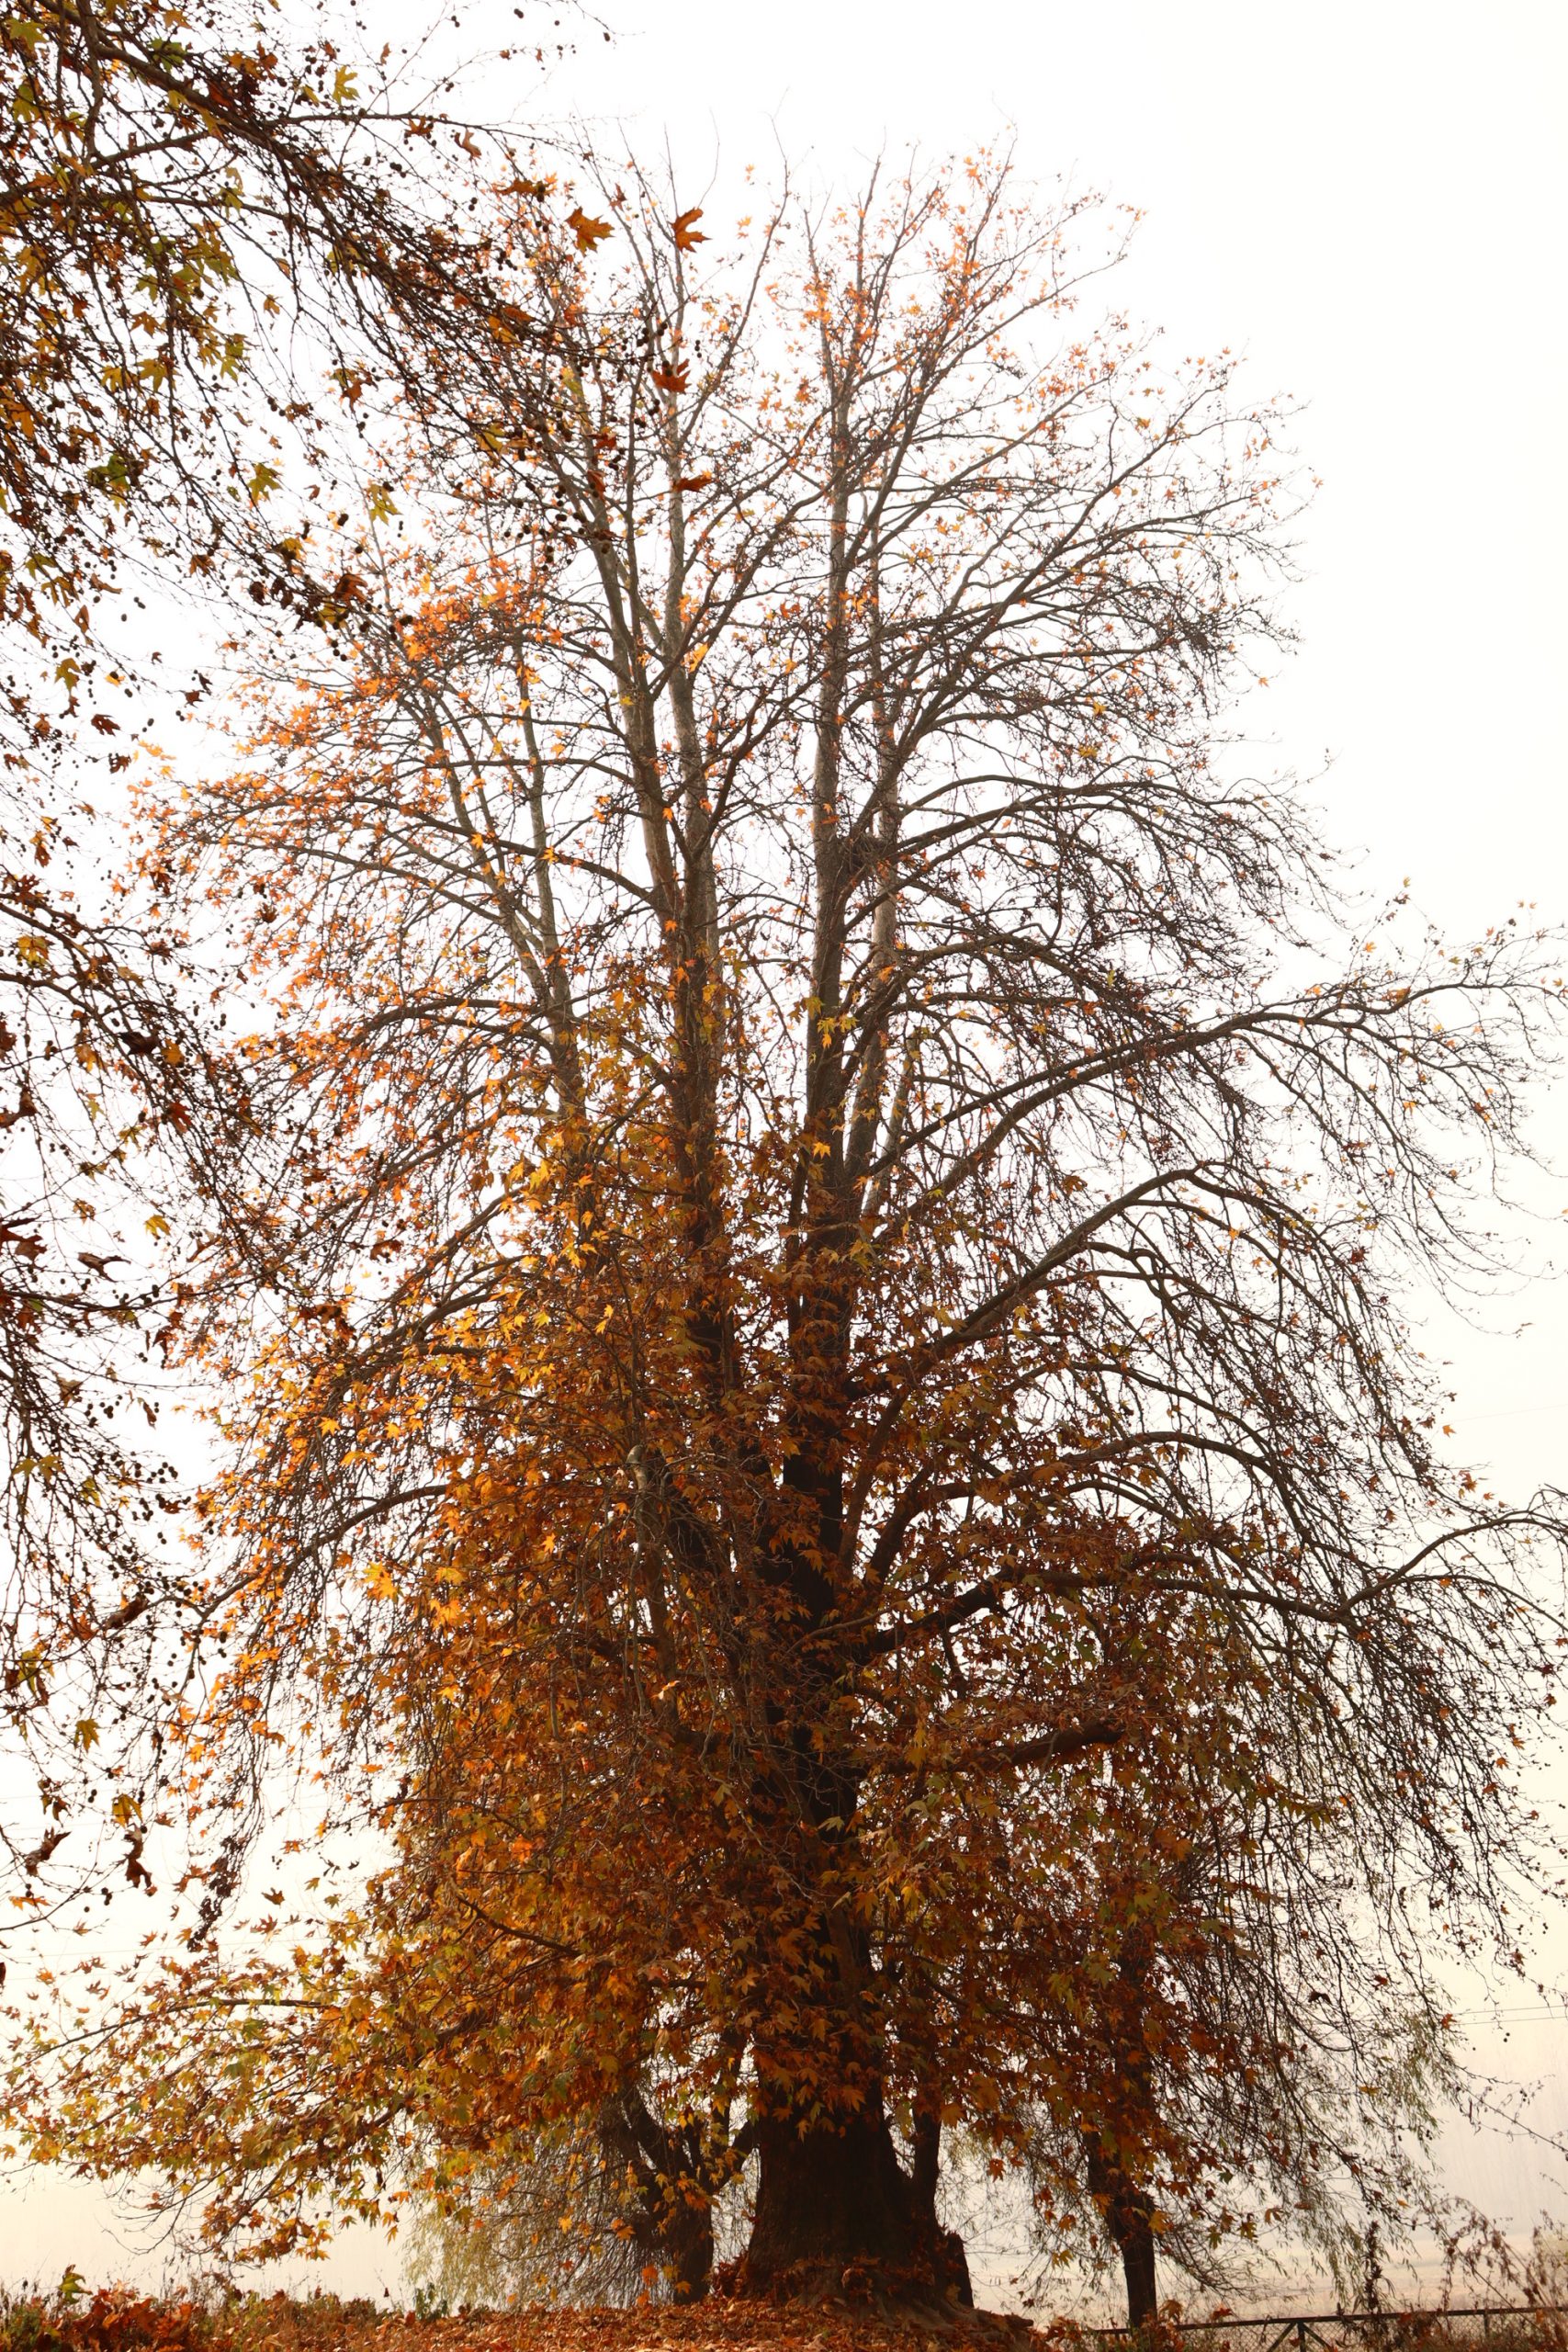 A chinar tree during autumn season